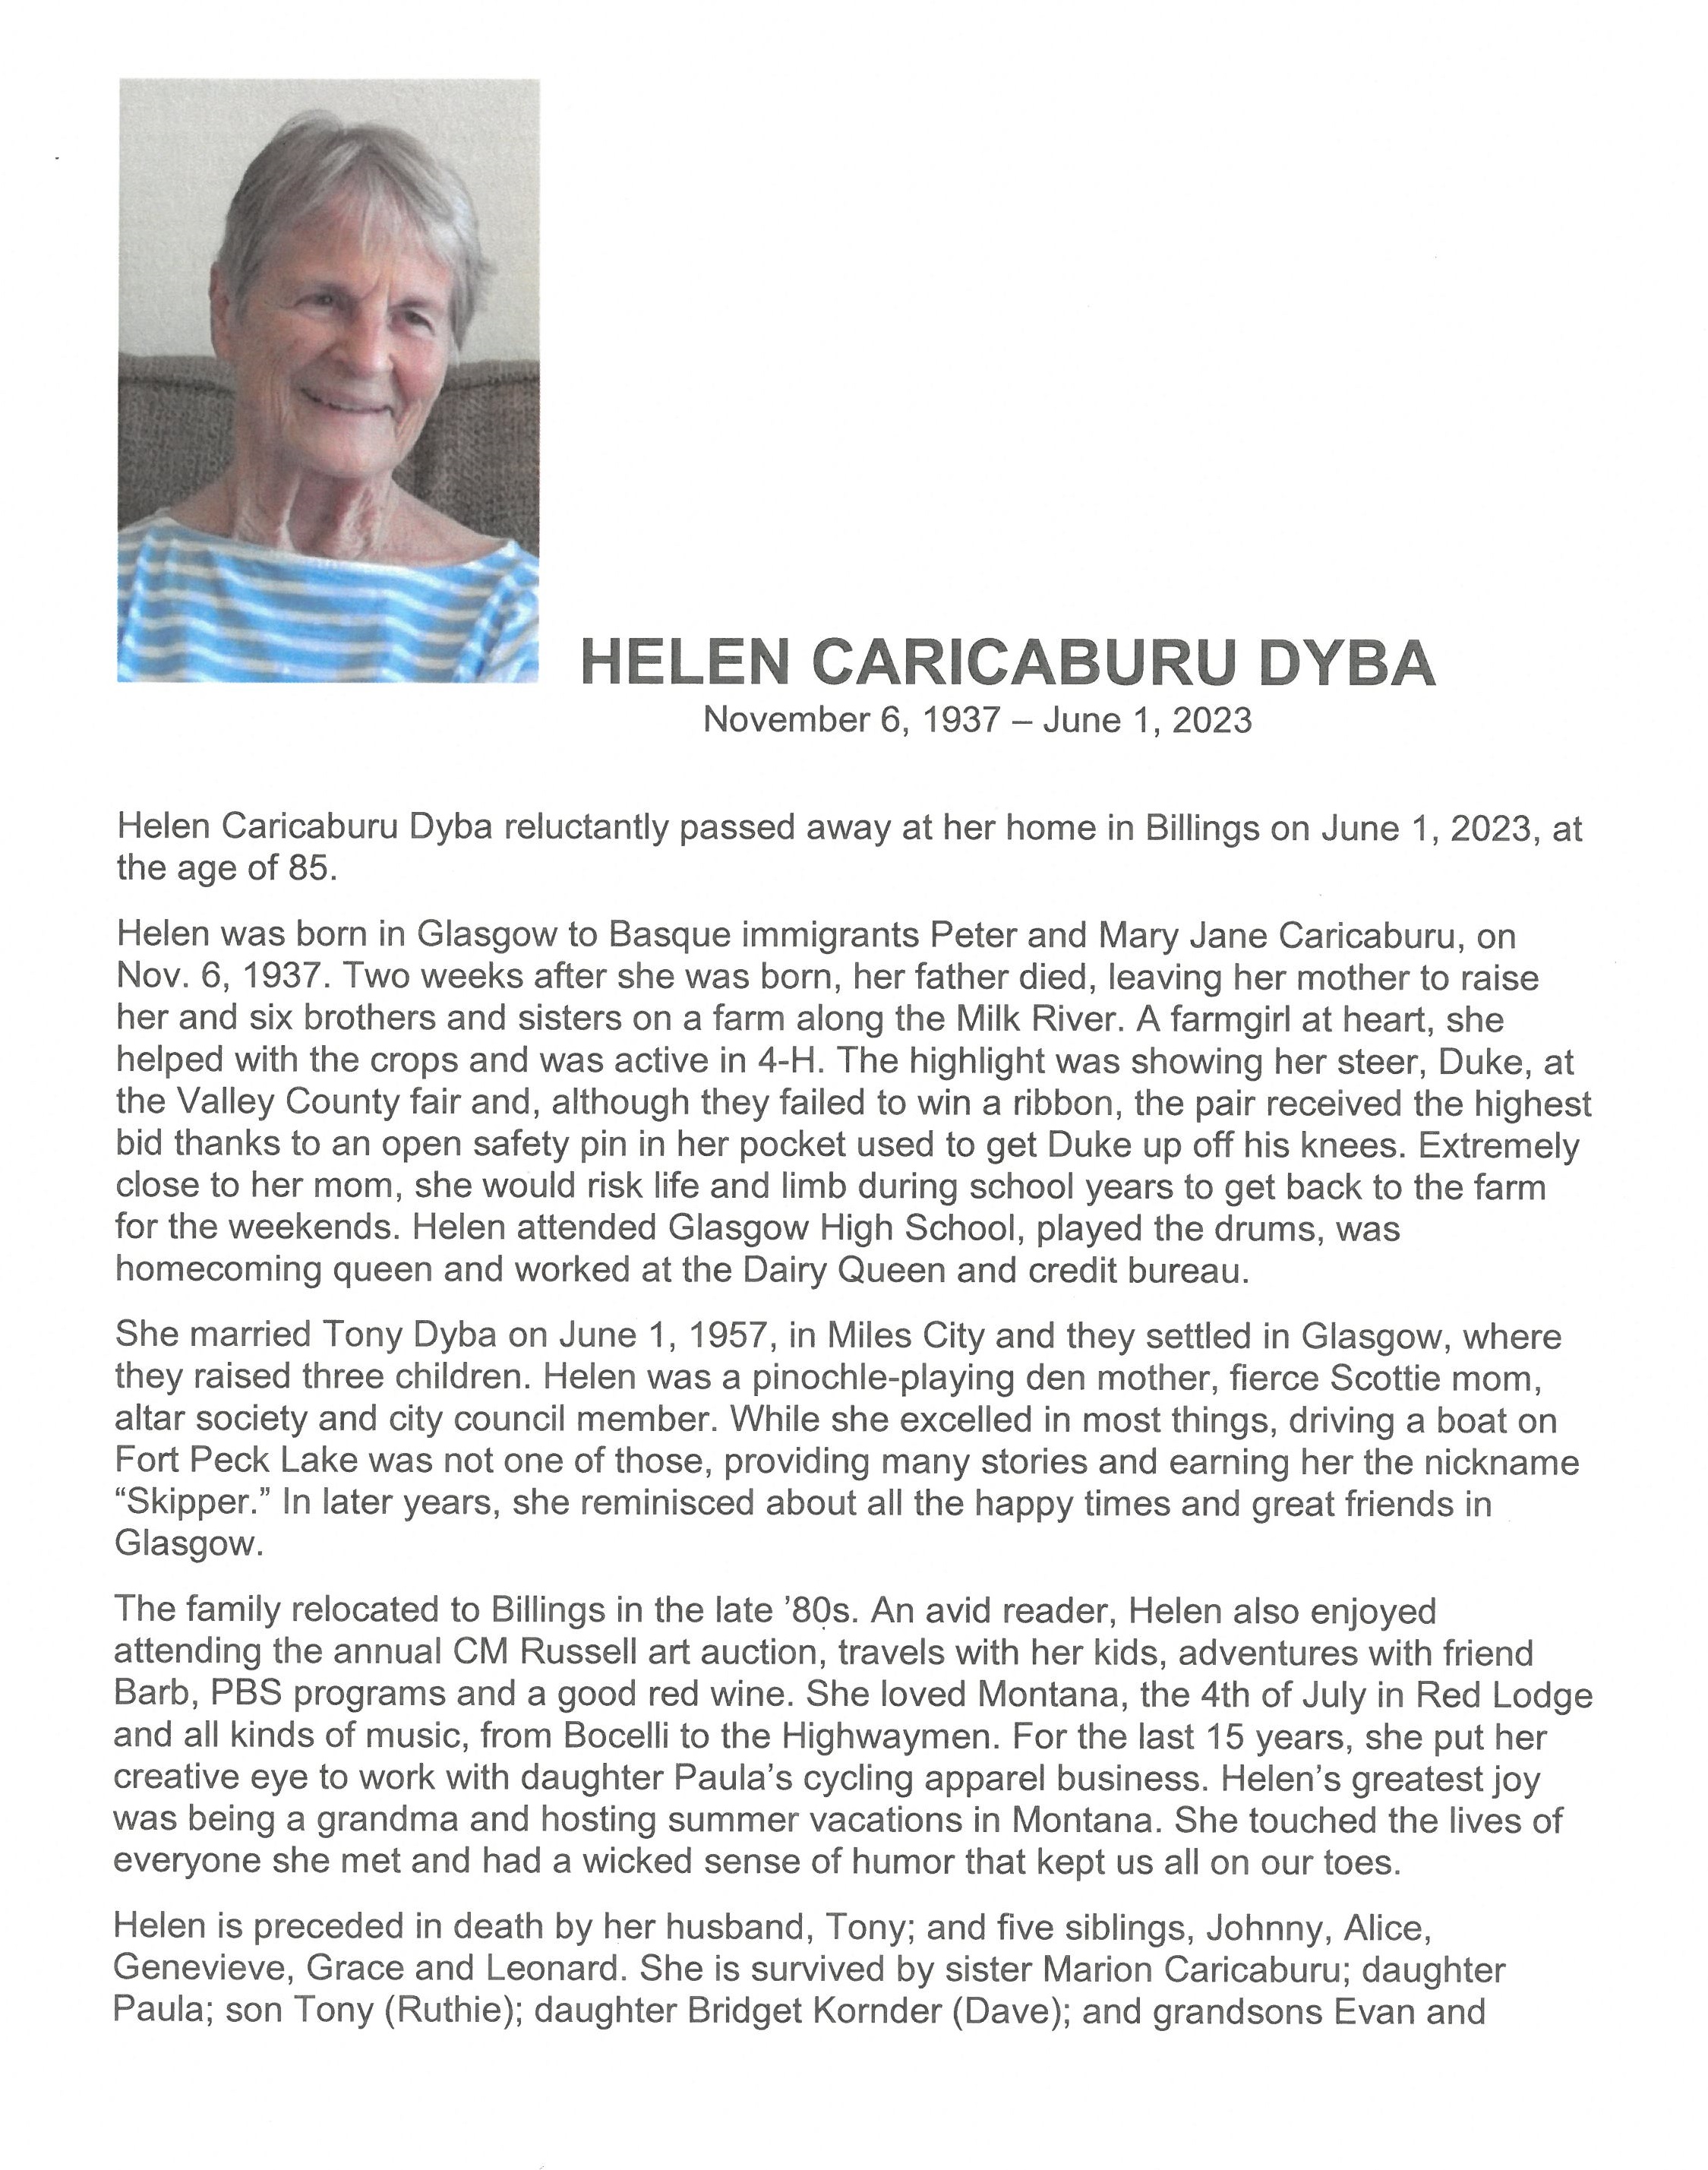 Dyba_Helen_Caricaburu_Obituary